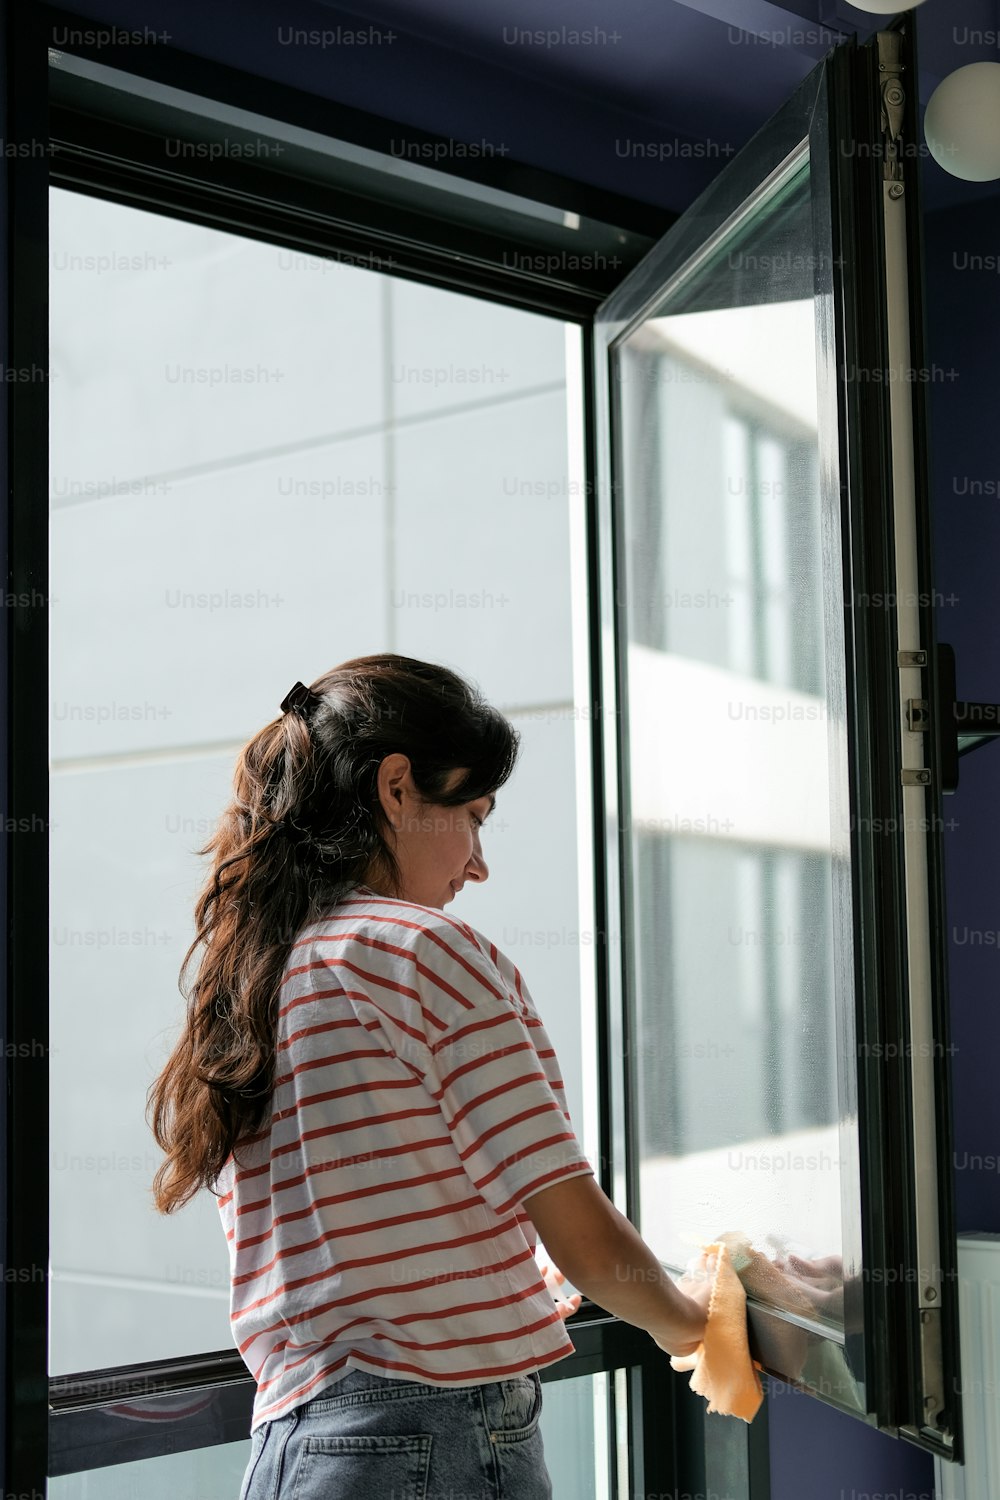 Eine Frau in gestreiftem Hemd öffnet eine Glastür